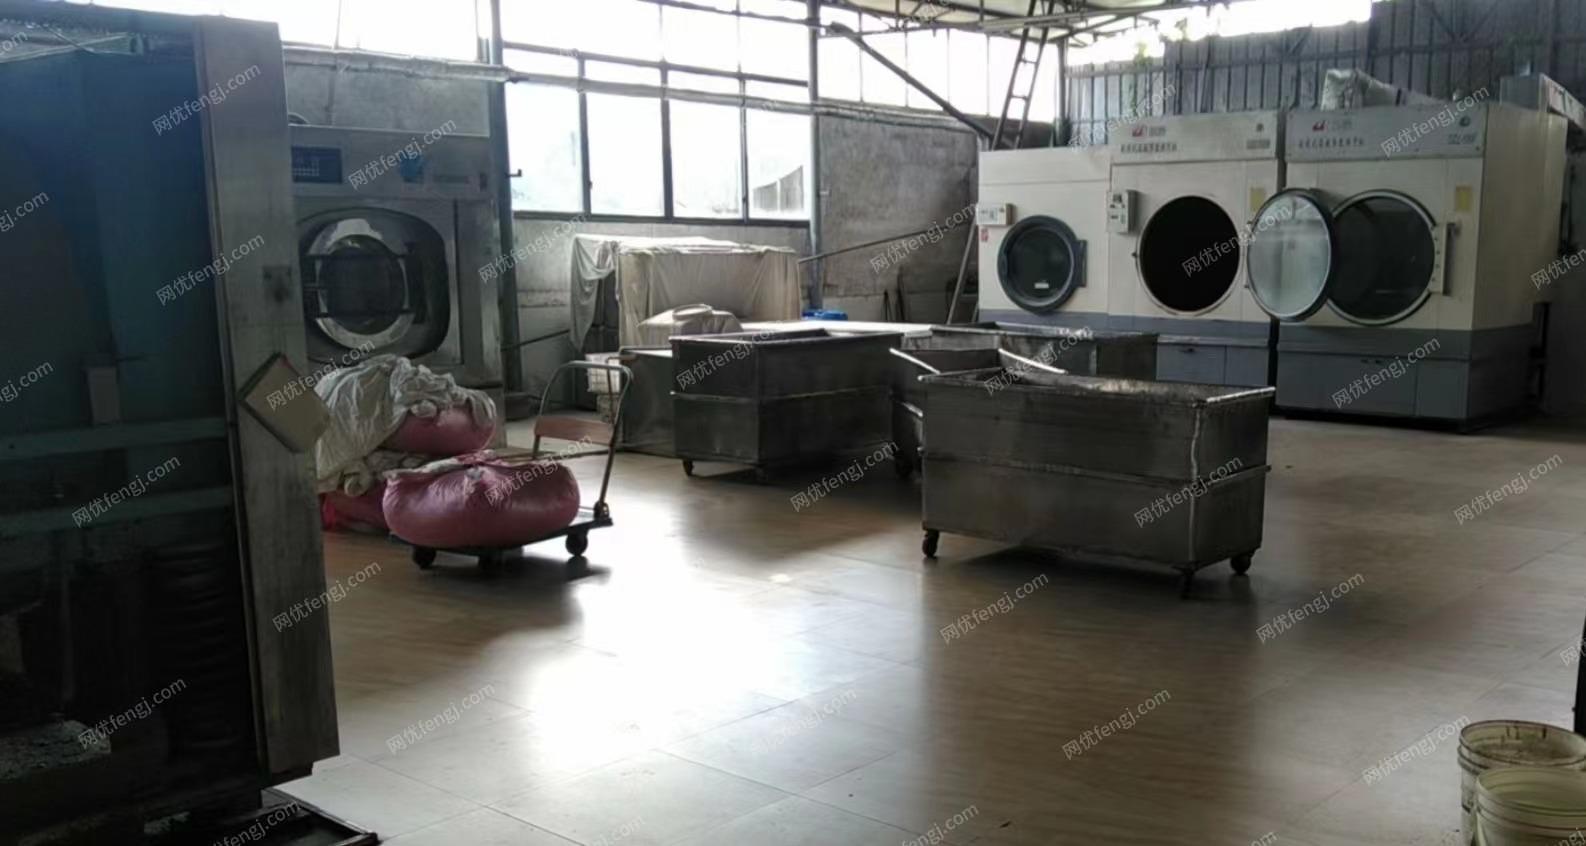 广西桂林二手5辊烫平机、折叠机、烘干机、洗衣机处理